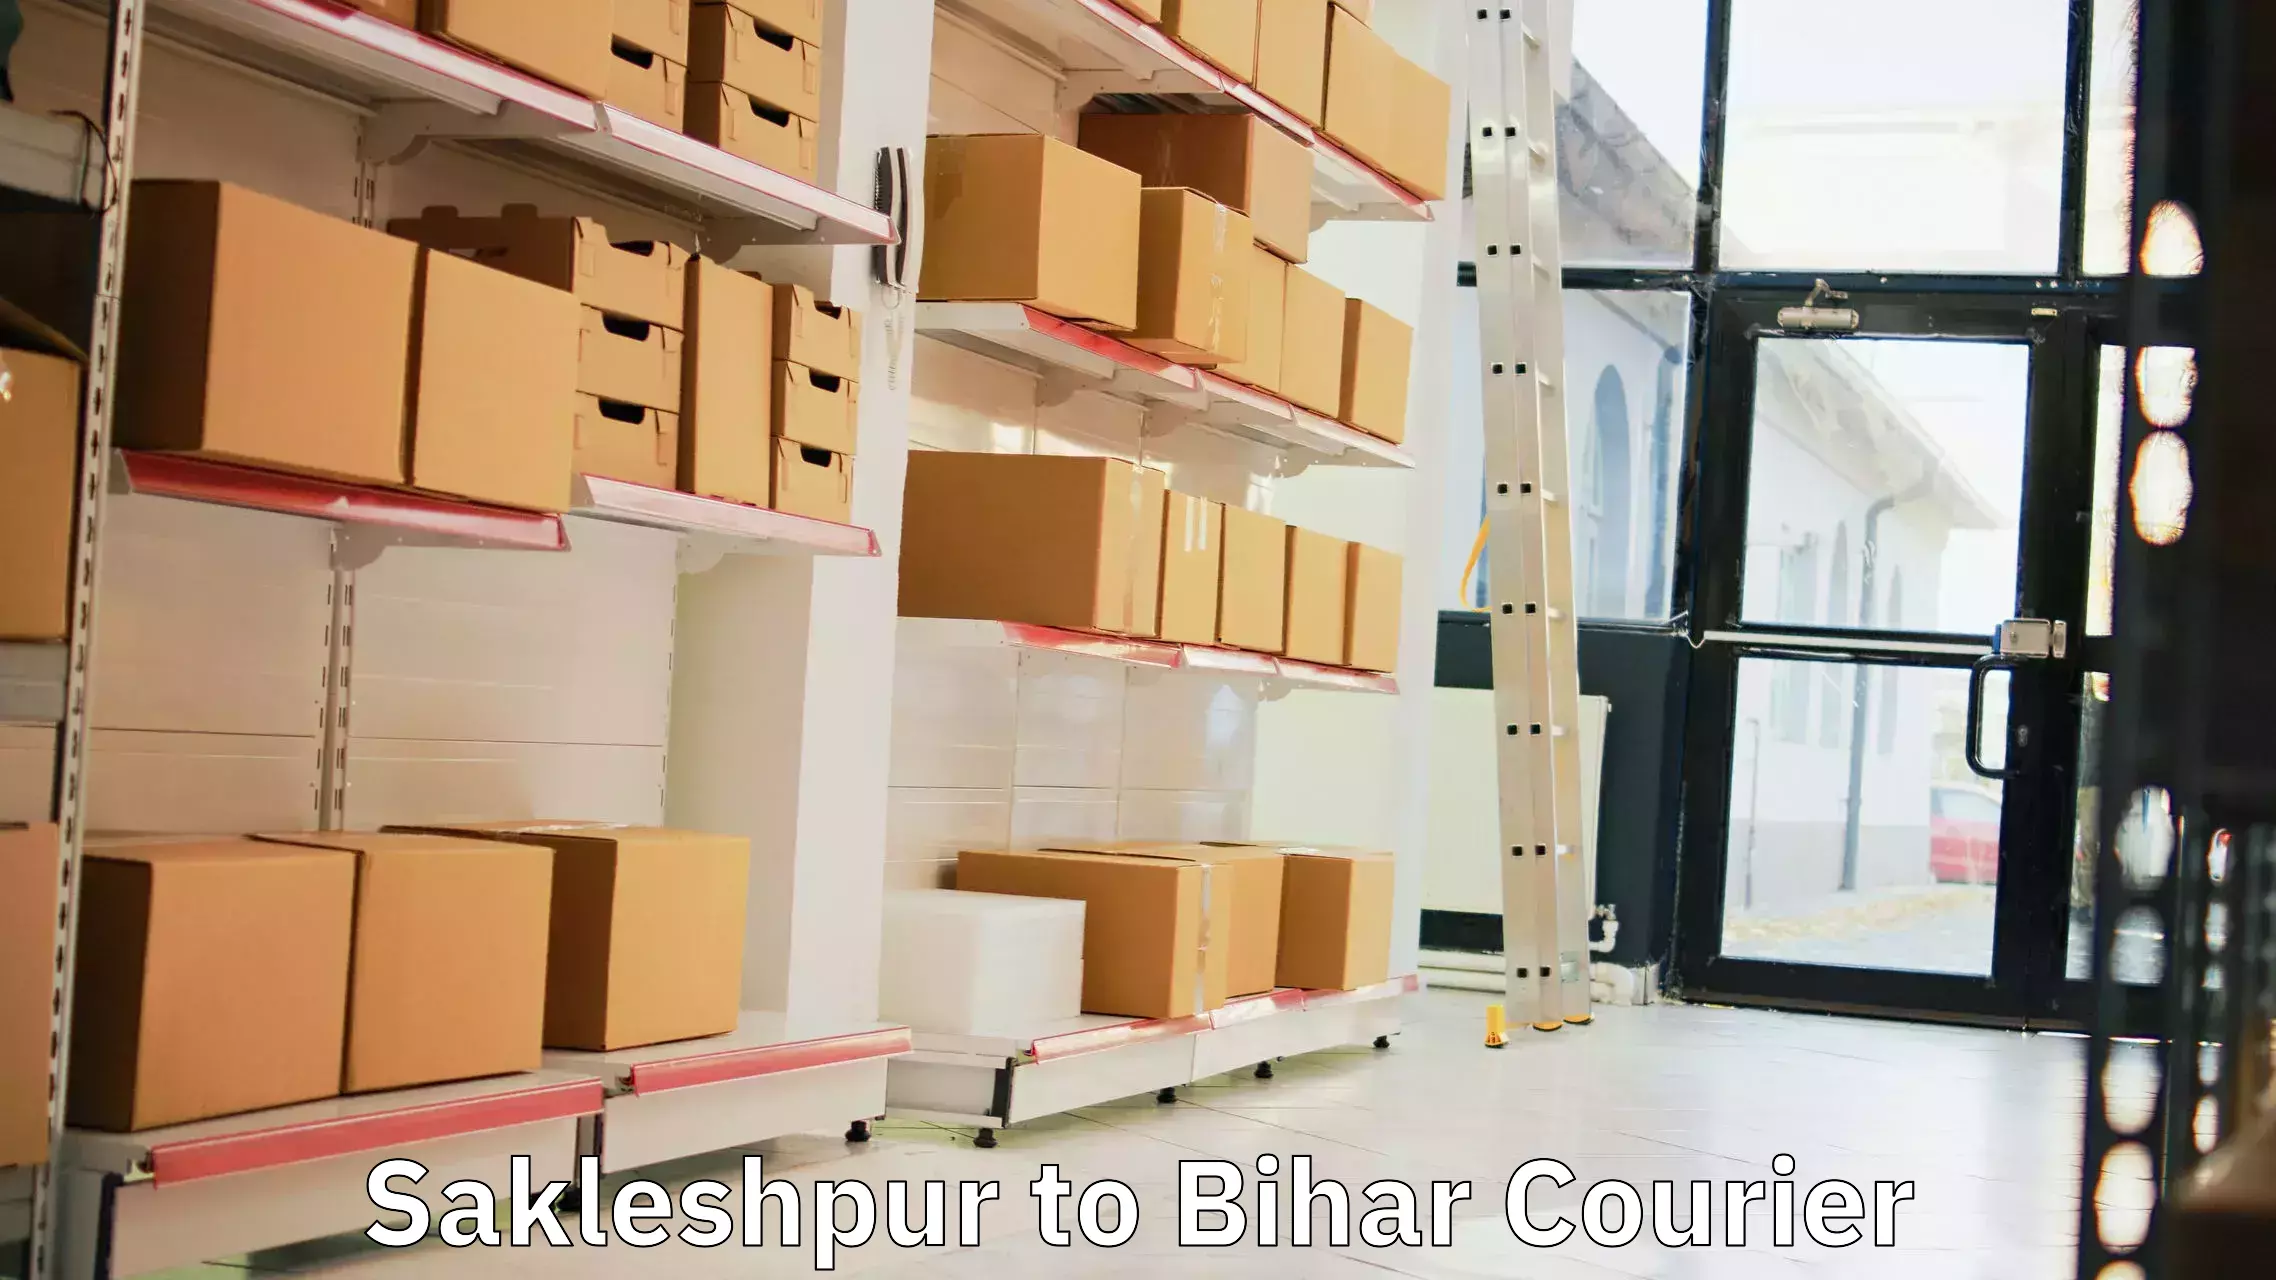 Courier service comparison Sakleshpur to Bihar